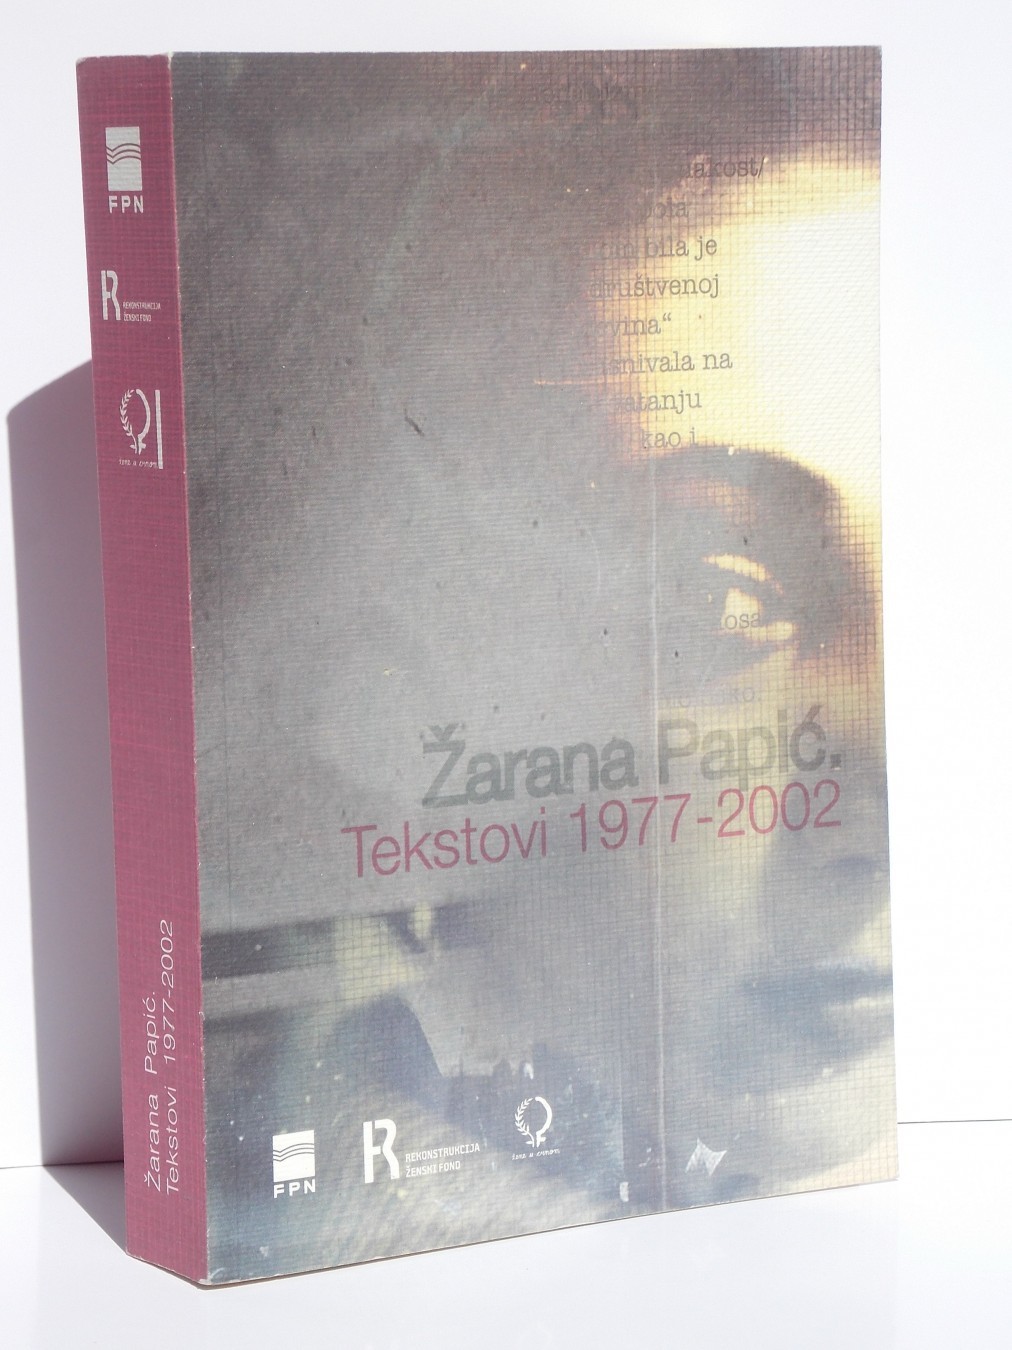 Edited volume of Žarana Papić's writings (1977-2002)